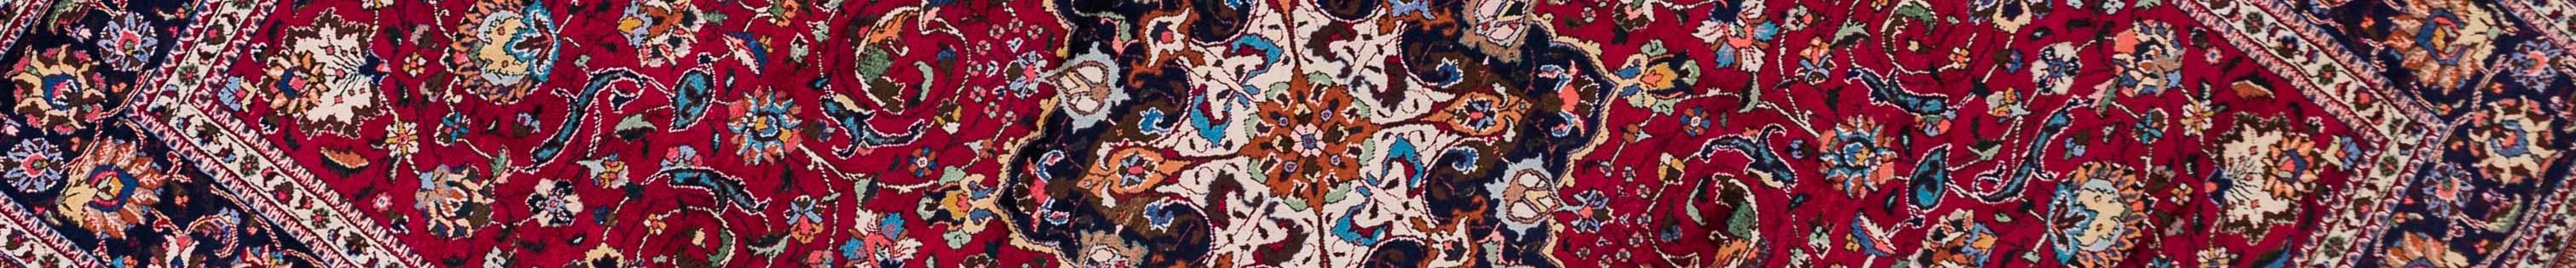 Tabriz Persian Carpet Rug N1Carpet Canada Montreal Tapis Persan 1800